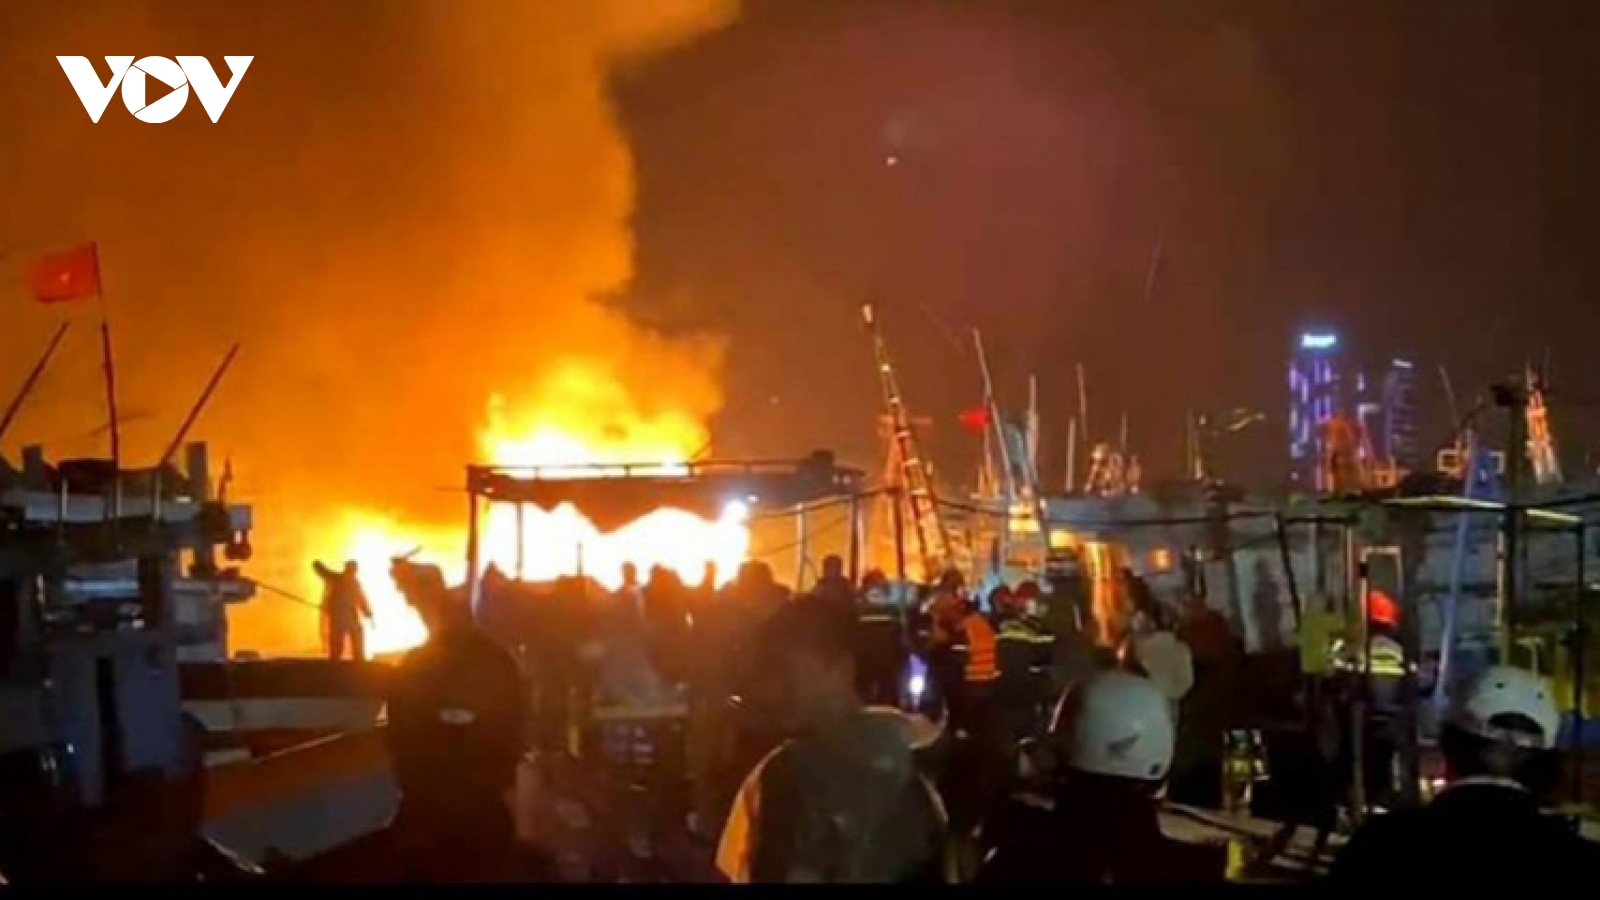 Cháy 2 tàu cá tại âu thuyền Thọ Quang